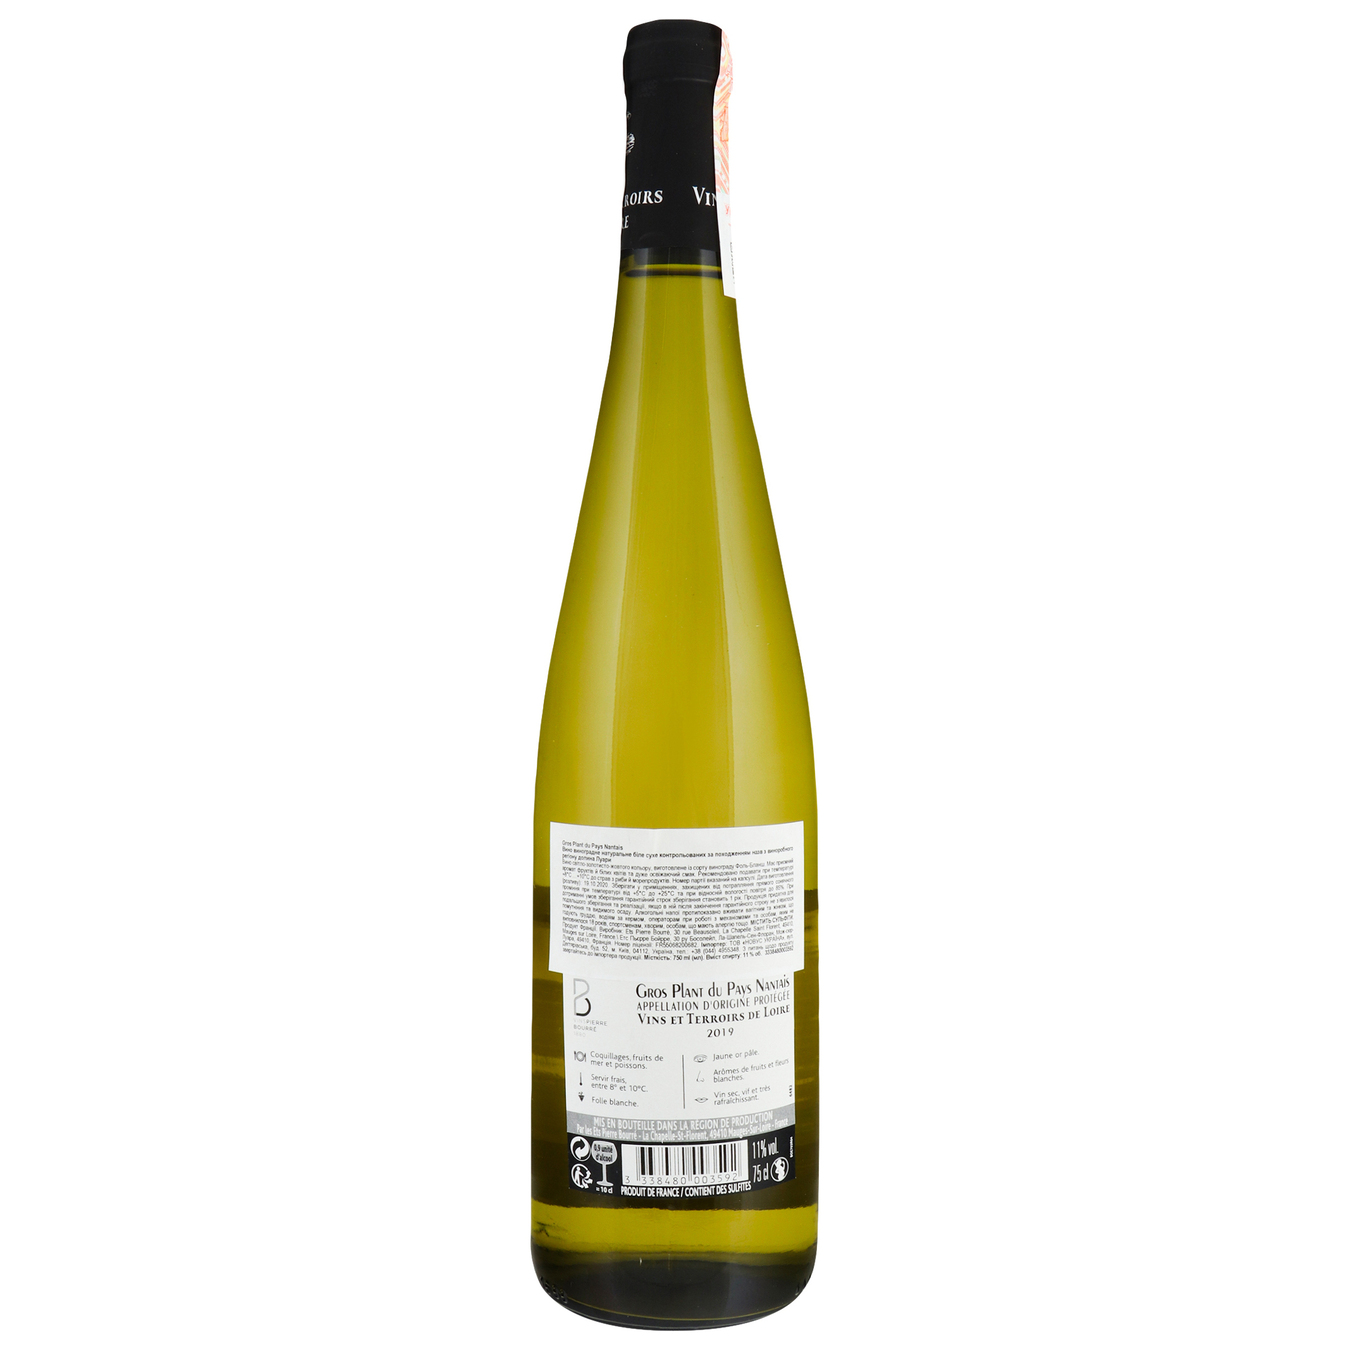 Wine Vins et Terroirs de Loire Gros Plant du Pays Nantais White Dry 11%0,75l 2